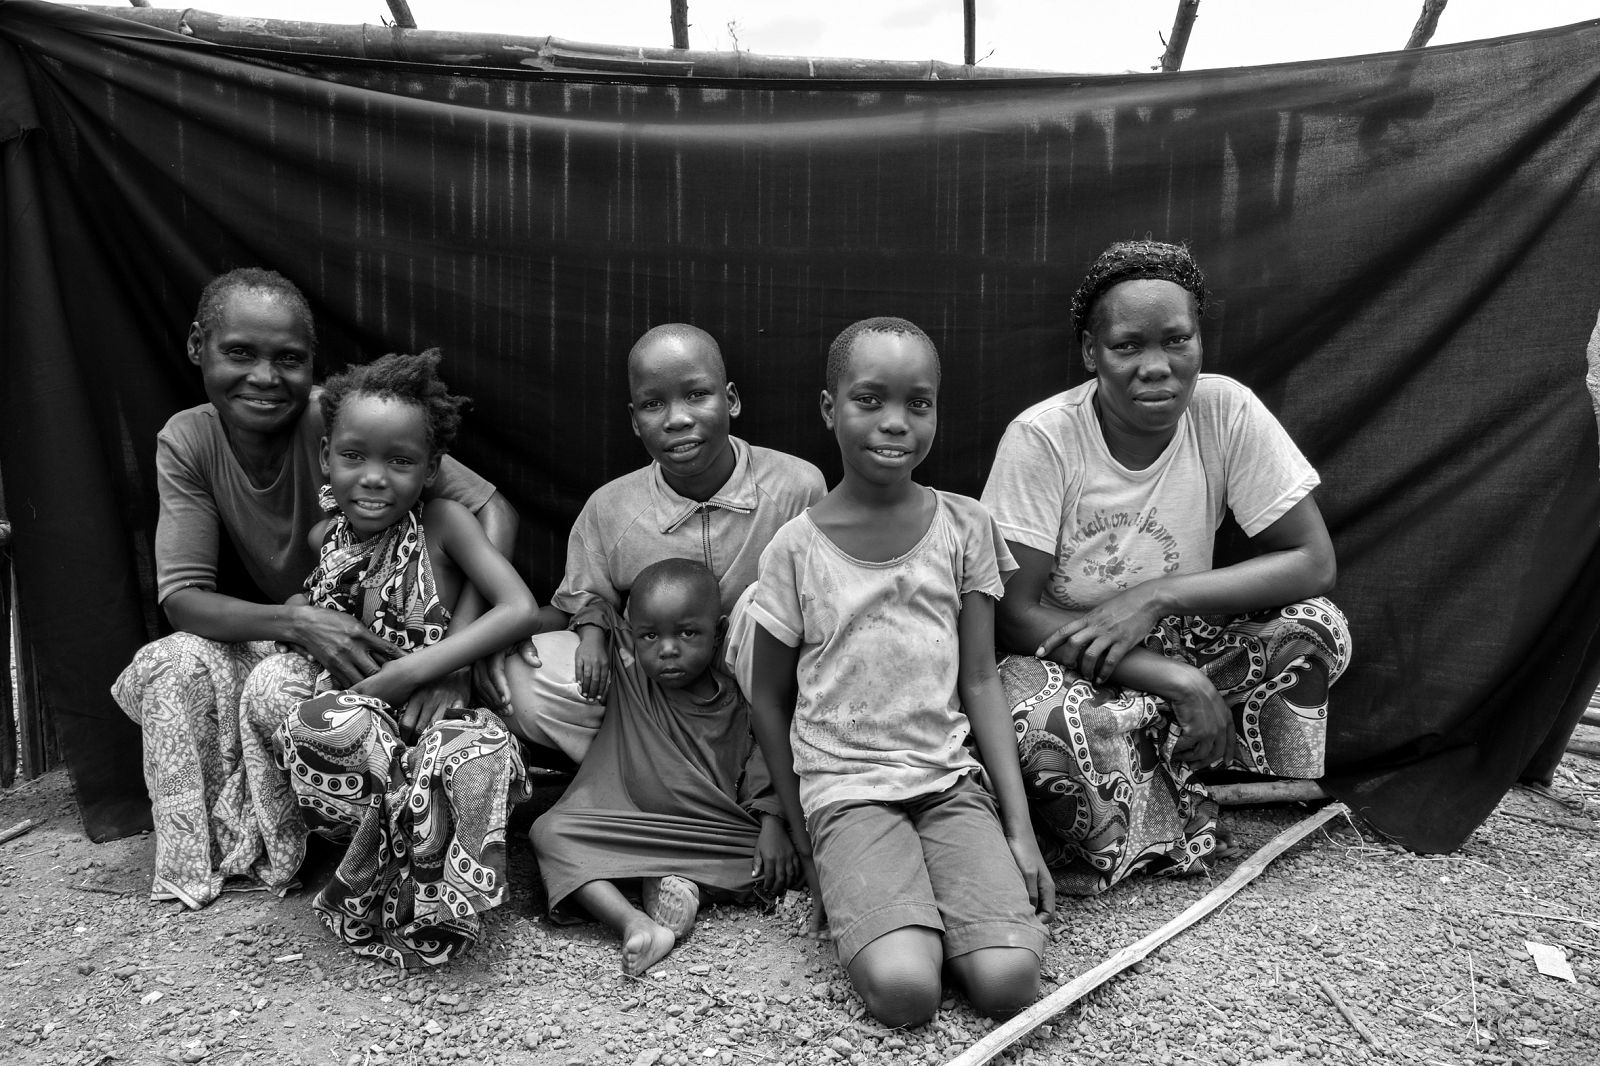 Bonheur (segundo por la derecha), de 9 años, en el campo de refugiados de Boyabo (República Democrática del Congo) con su familia, lo "más importante" de su vida.